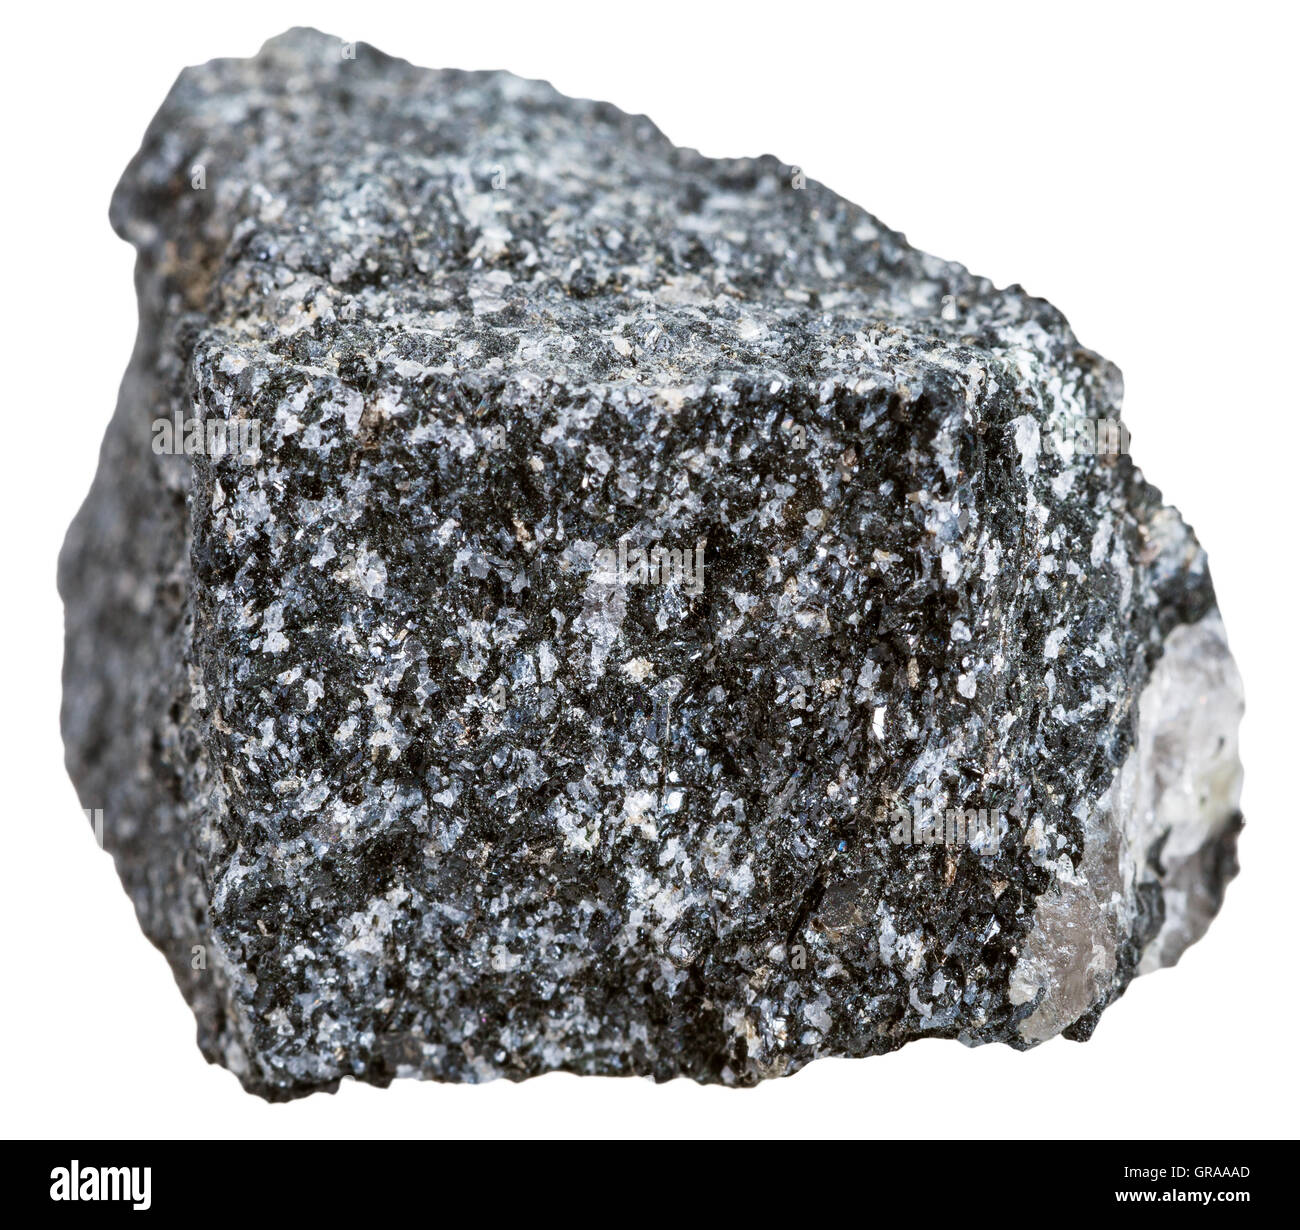 La prise de vue macro des échantillons de roche métamorphique - pierre Amphibolite isolé sur fond blanc Banque D'Images